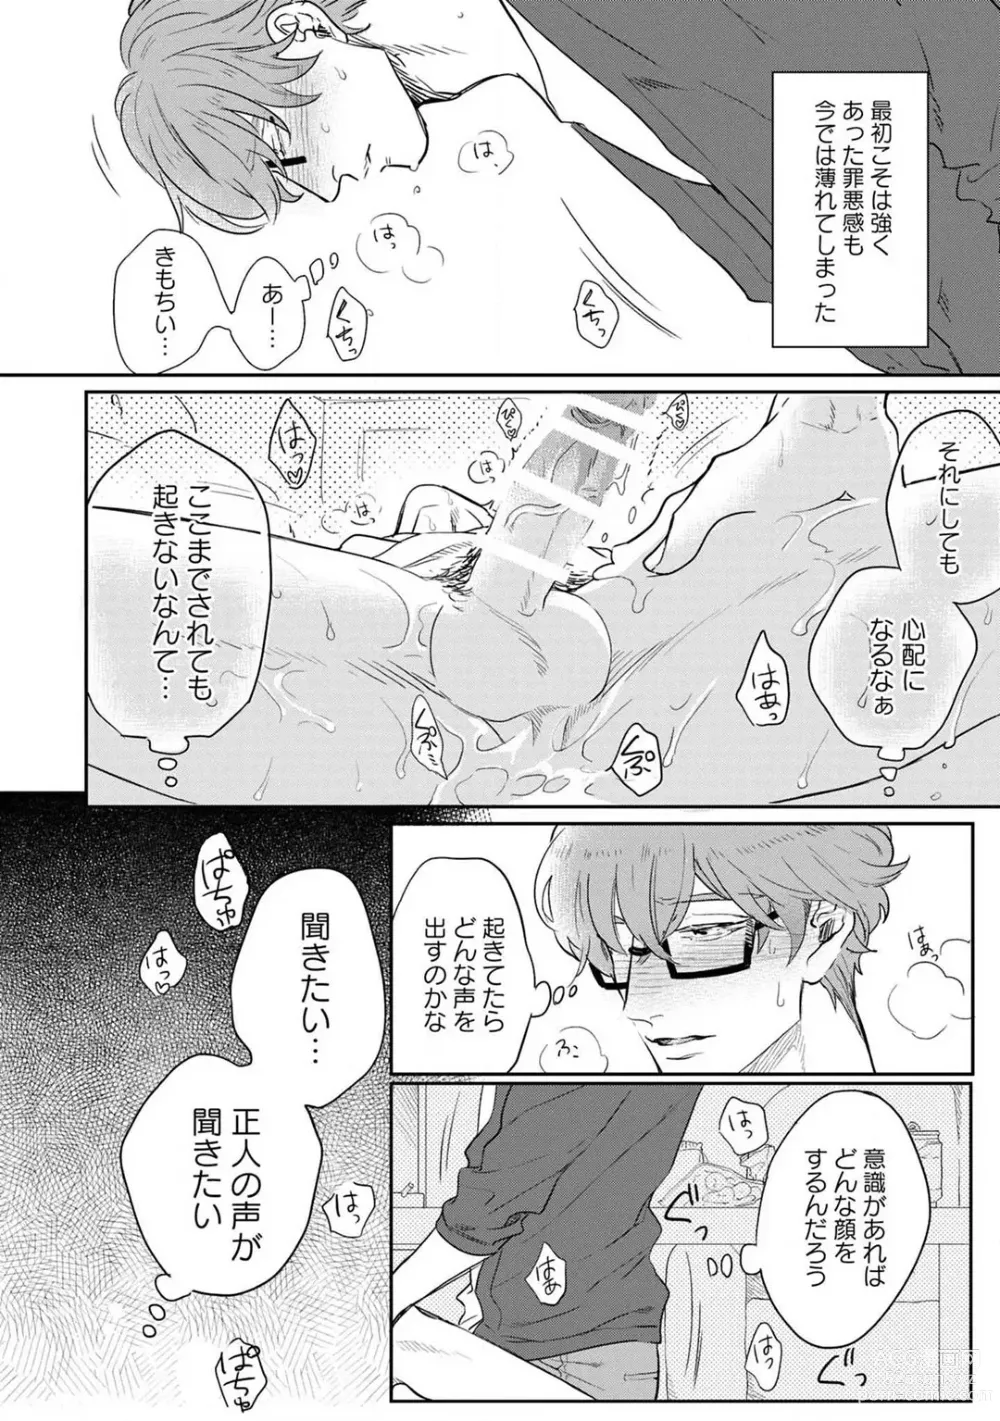 Page 15 of manga Kimi no Shiranai xx